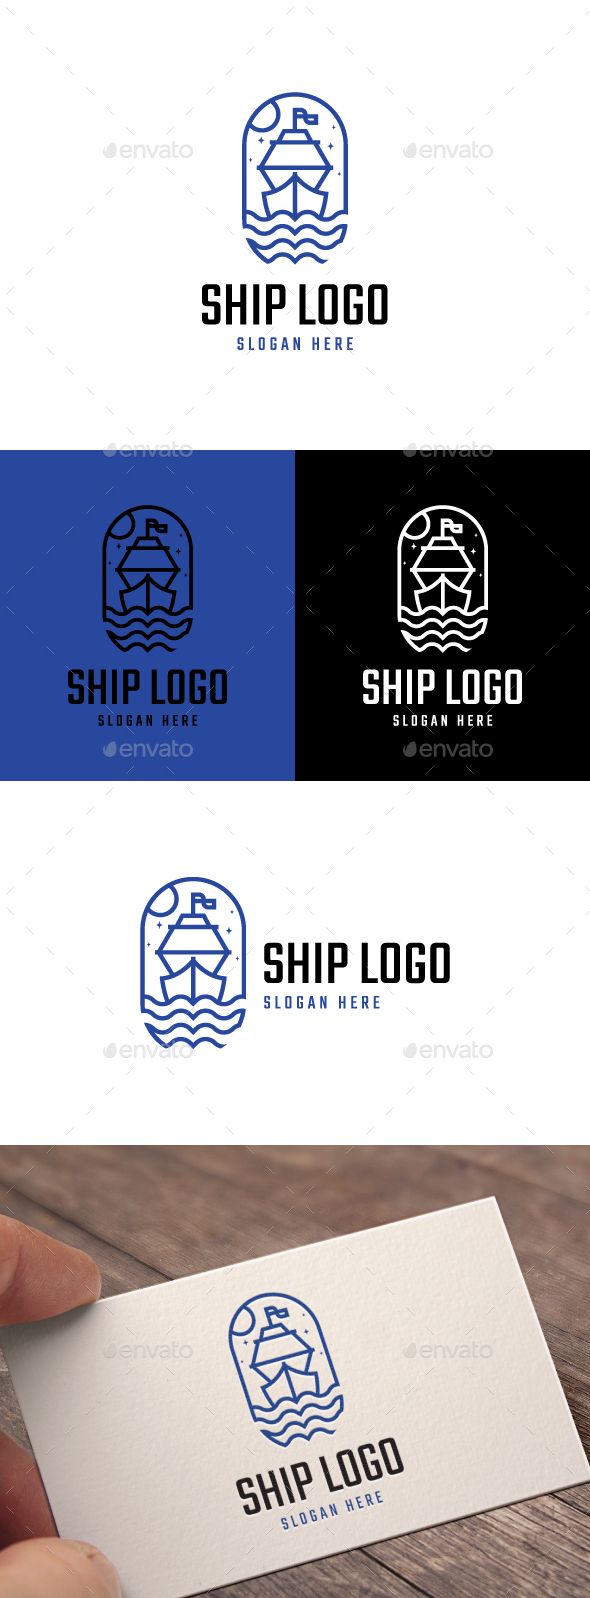 [DOWNLOAD]Ship Logo